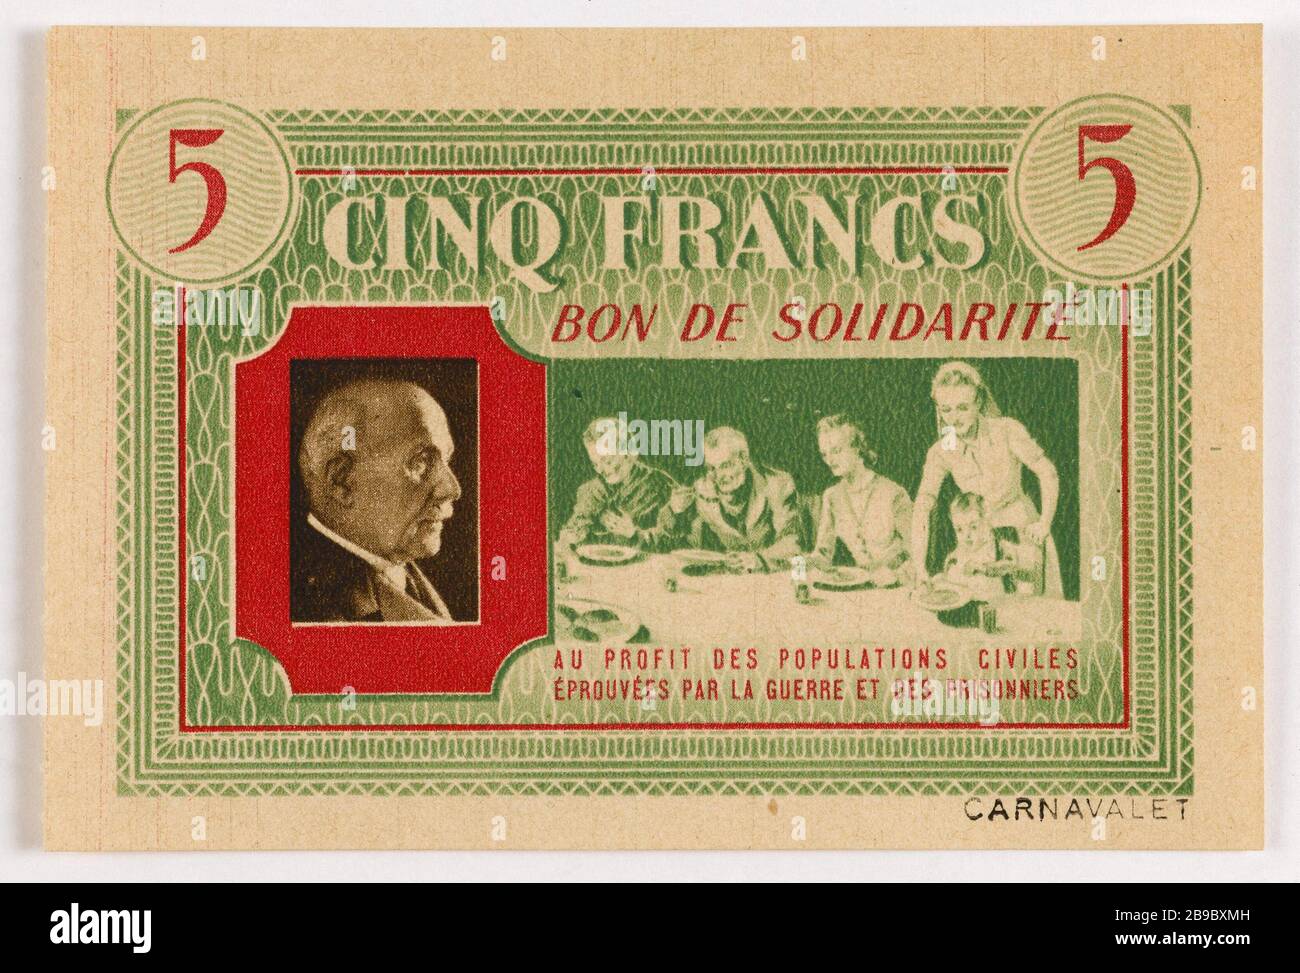 Good Solidarity 5 francs department of Seine 1940. Anonyme. Bon de solidarité de 5 francs, département de la Seine, 1940. Typographie. Paris, musée Carnavalet. Stock Photo